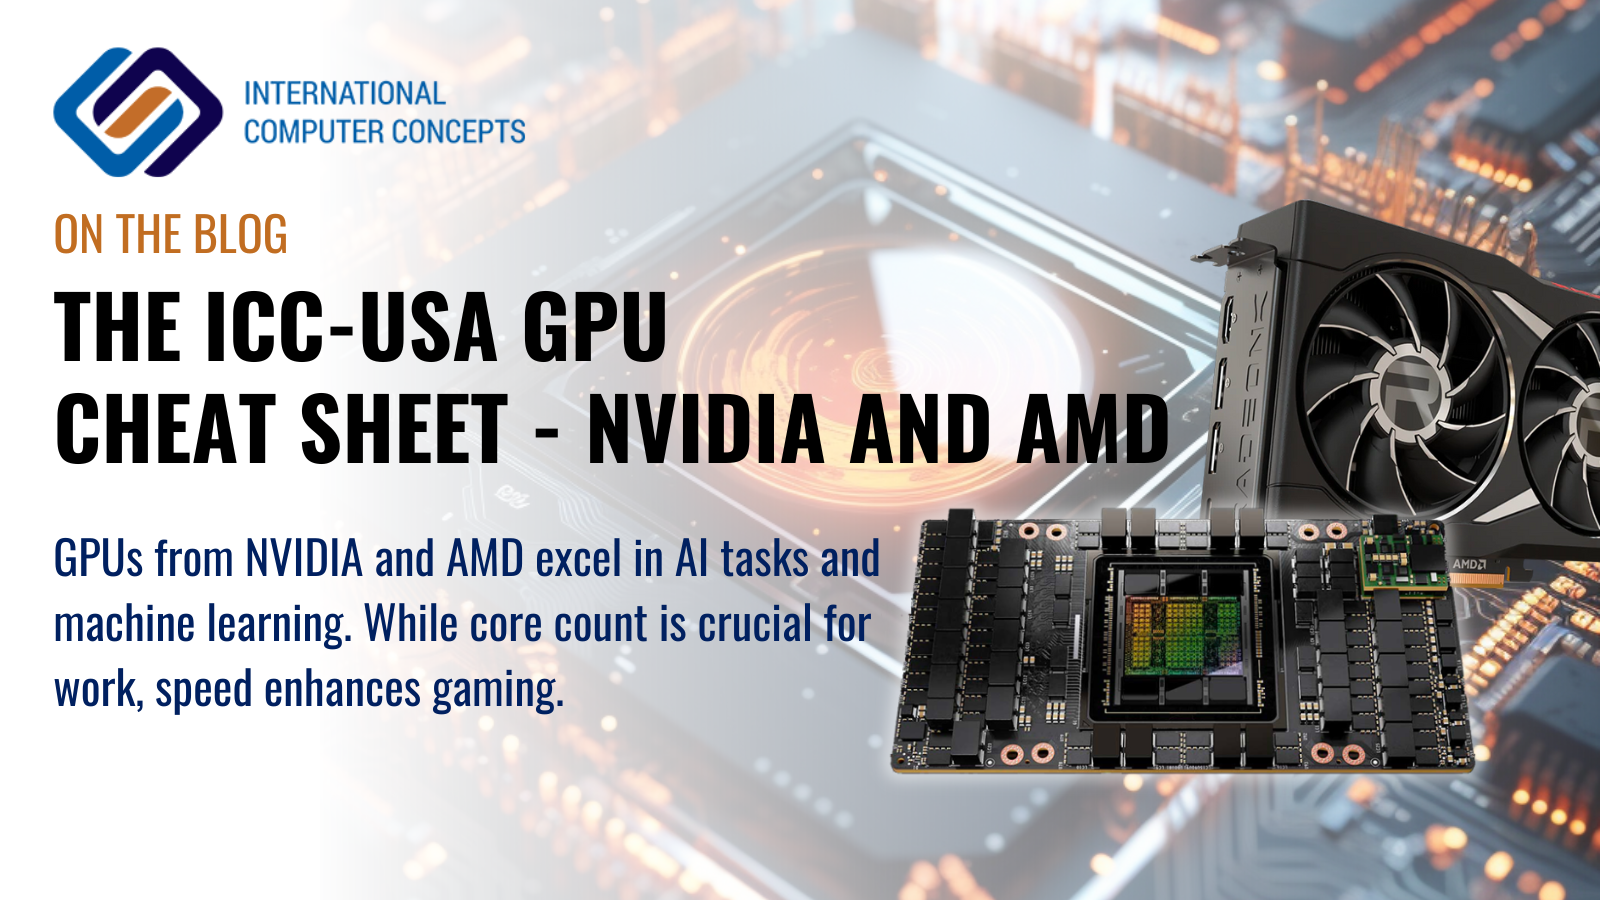 The ICC-USA GPU Cheat Sheet - NVIDIA and AMD